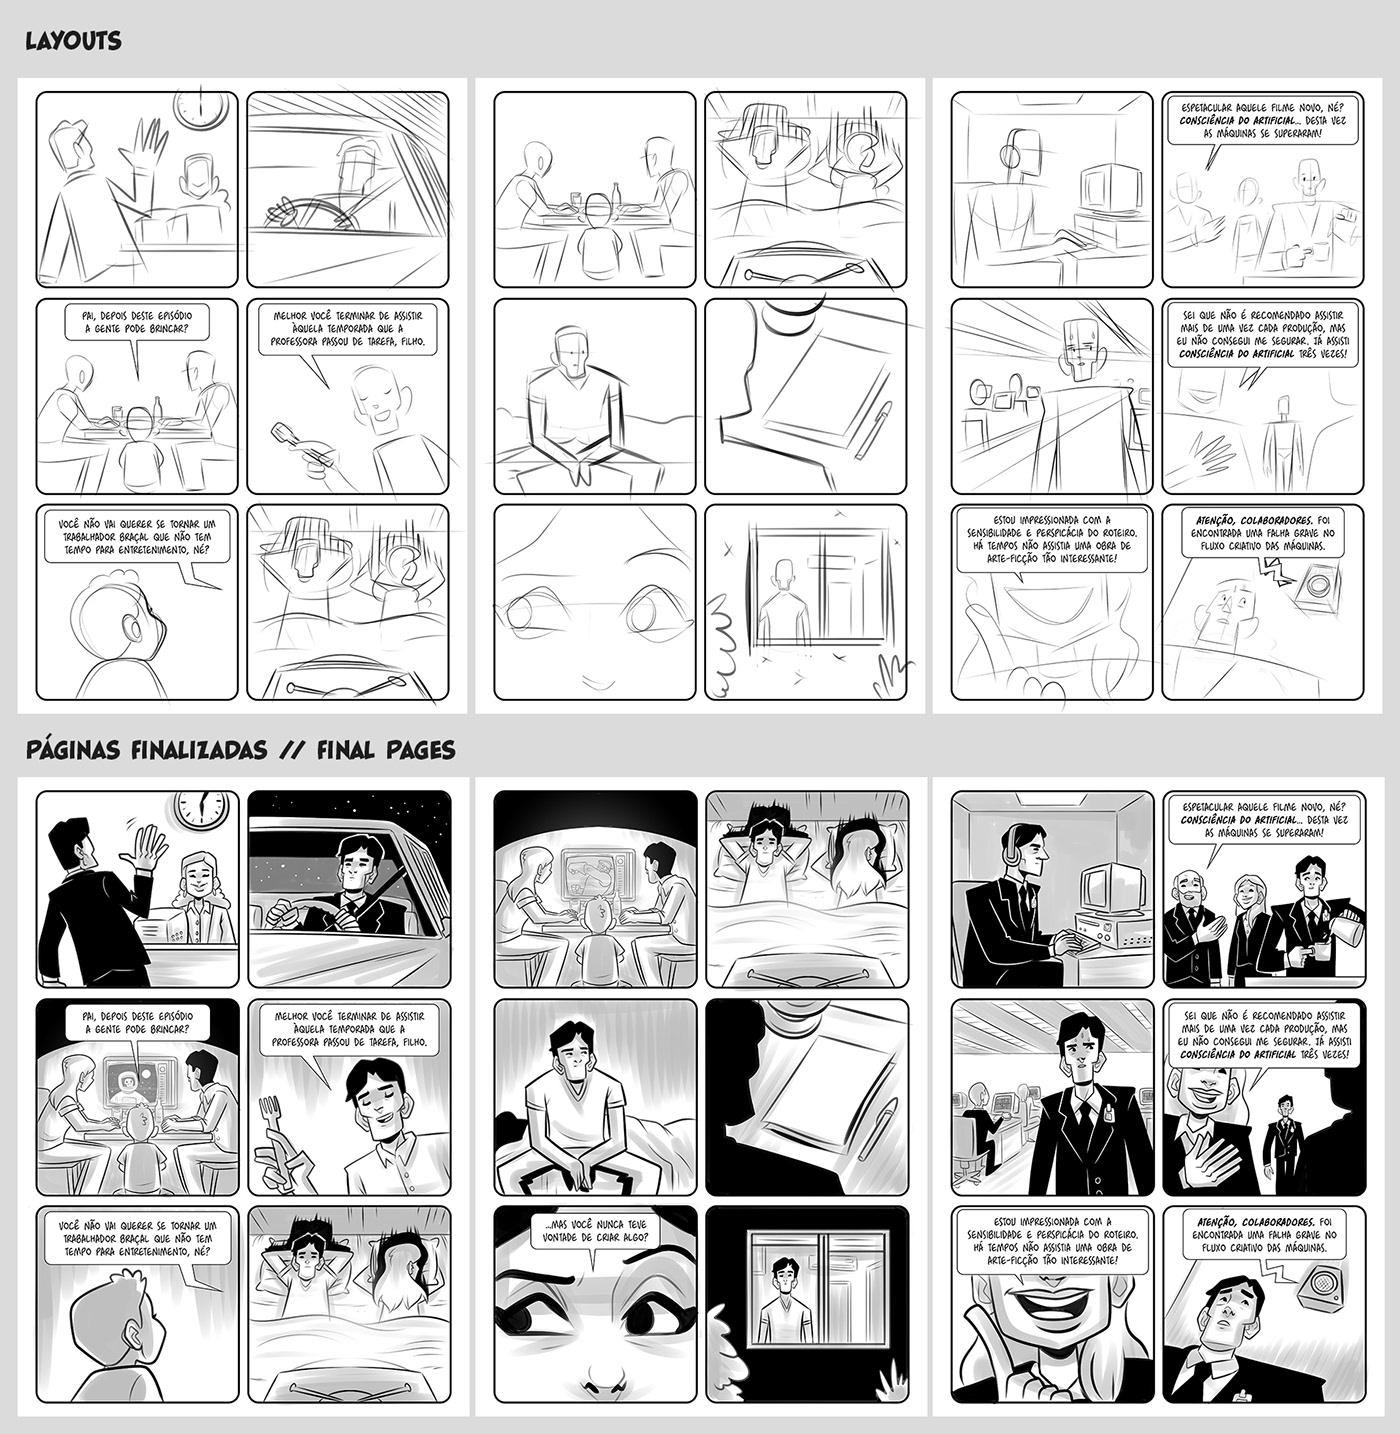 quadrinhos hq comics comicbook histórias em quadrinhos